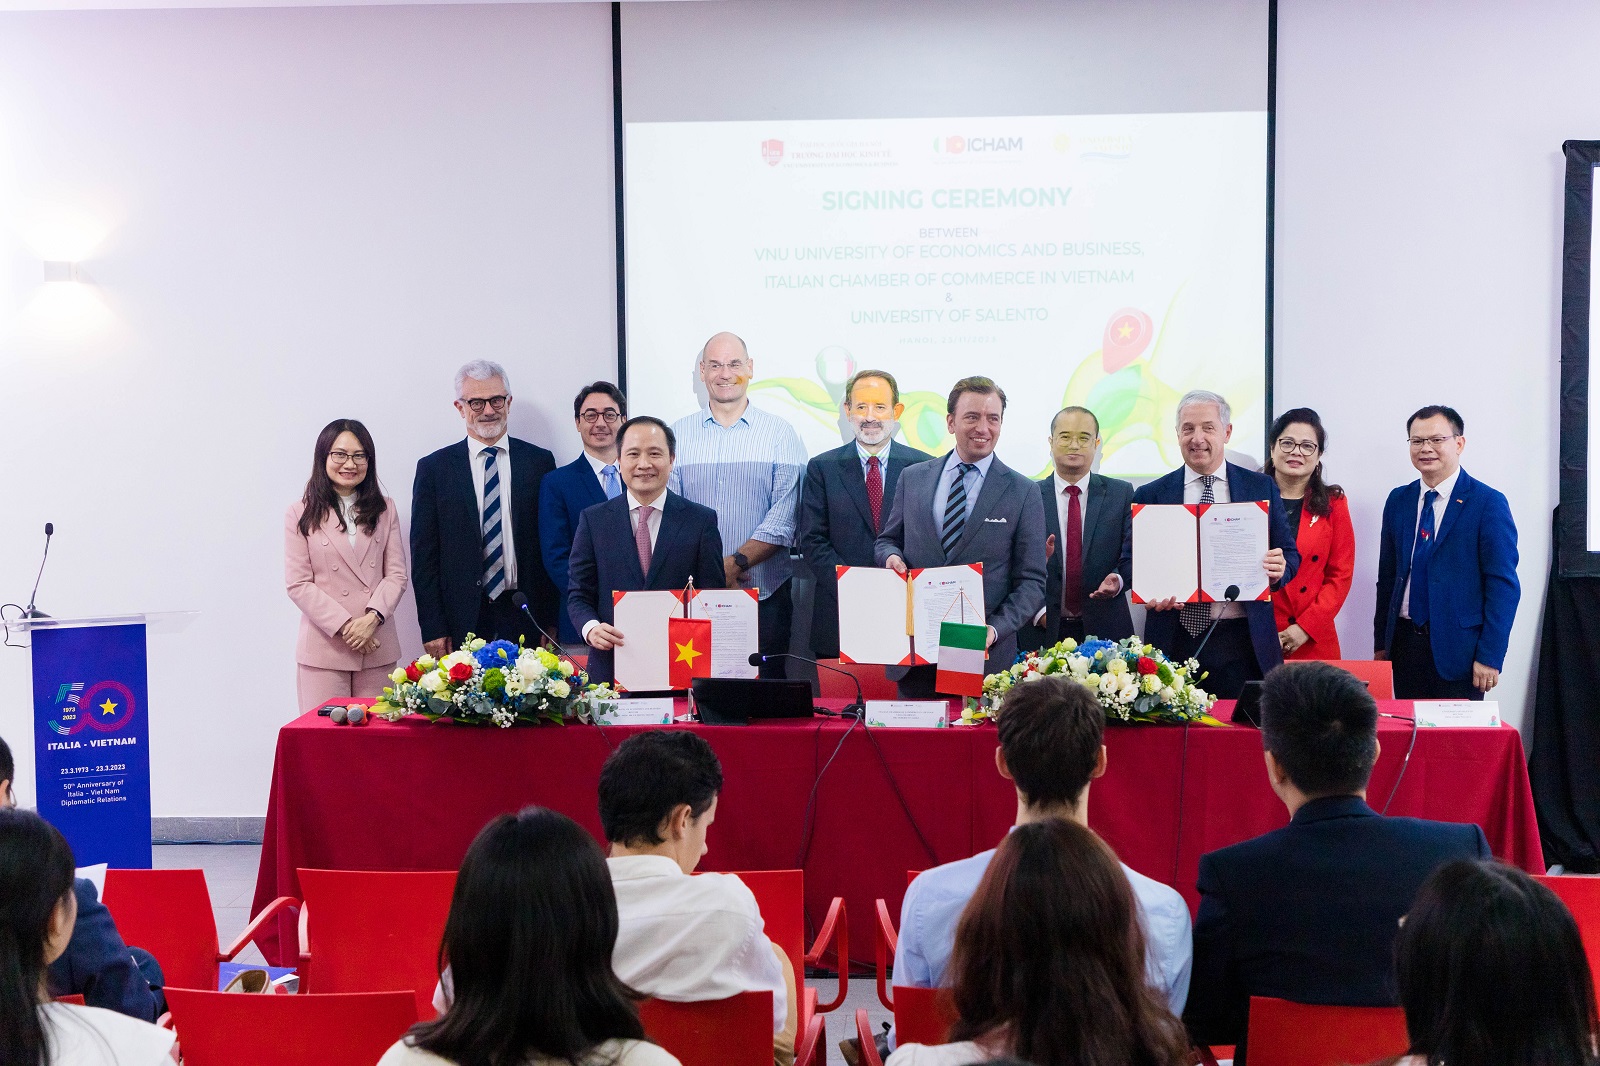 Trường Đại học Kinh tế - ĐHQGHN mở rộng hợp tác, ký kết Ý định thư và tổ chức tọa đàm với Phòng Thương mại Italia tại Việt Nam và Đại học Salento, Ý